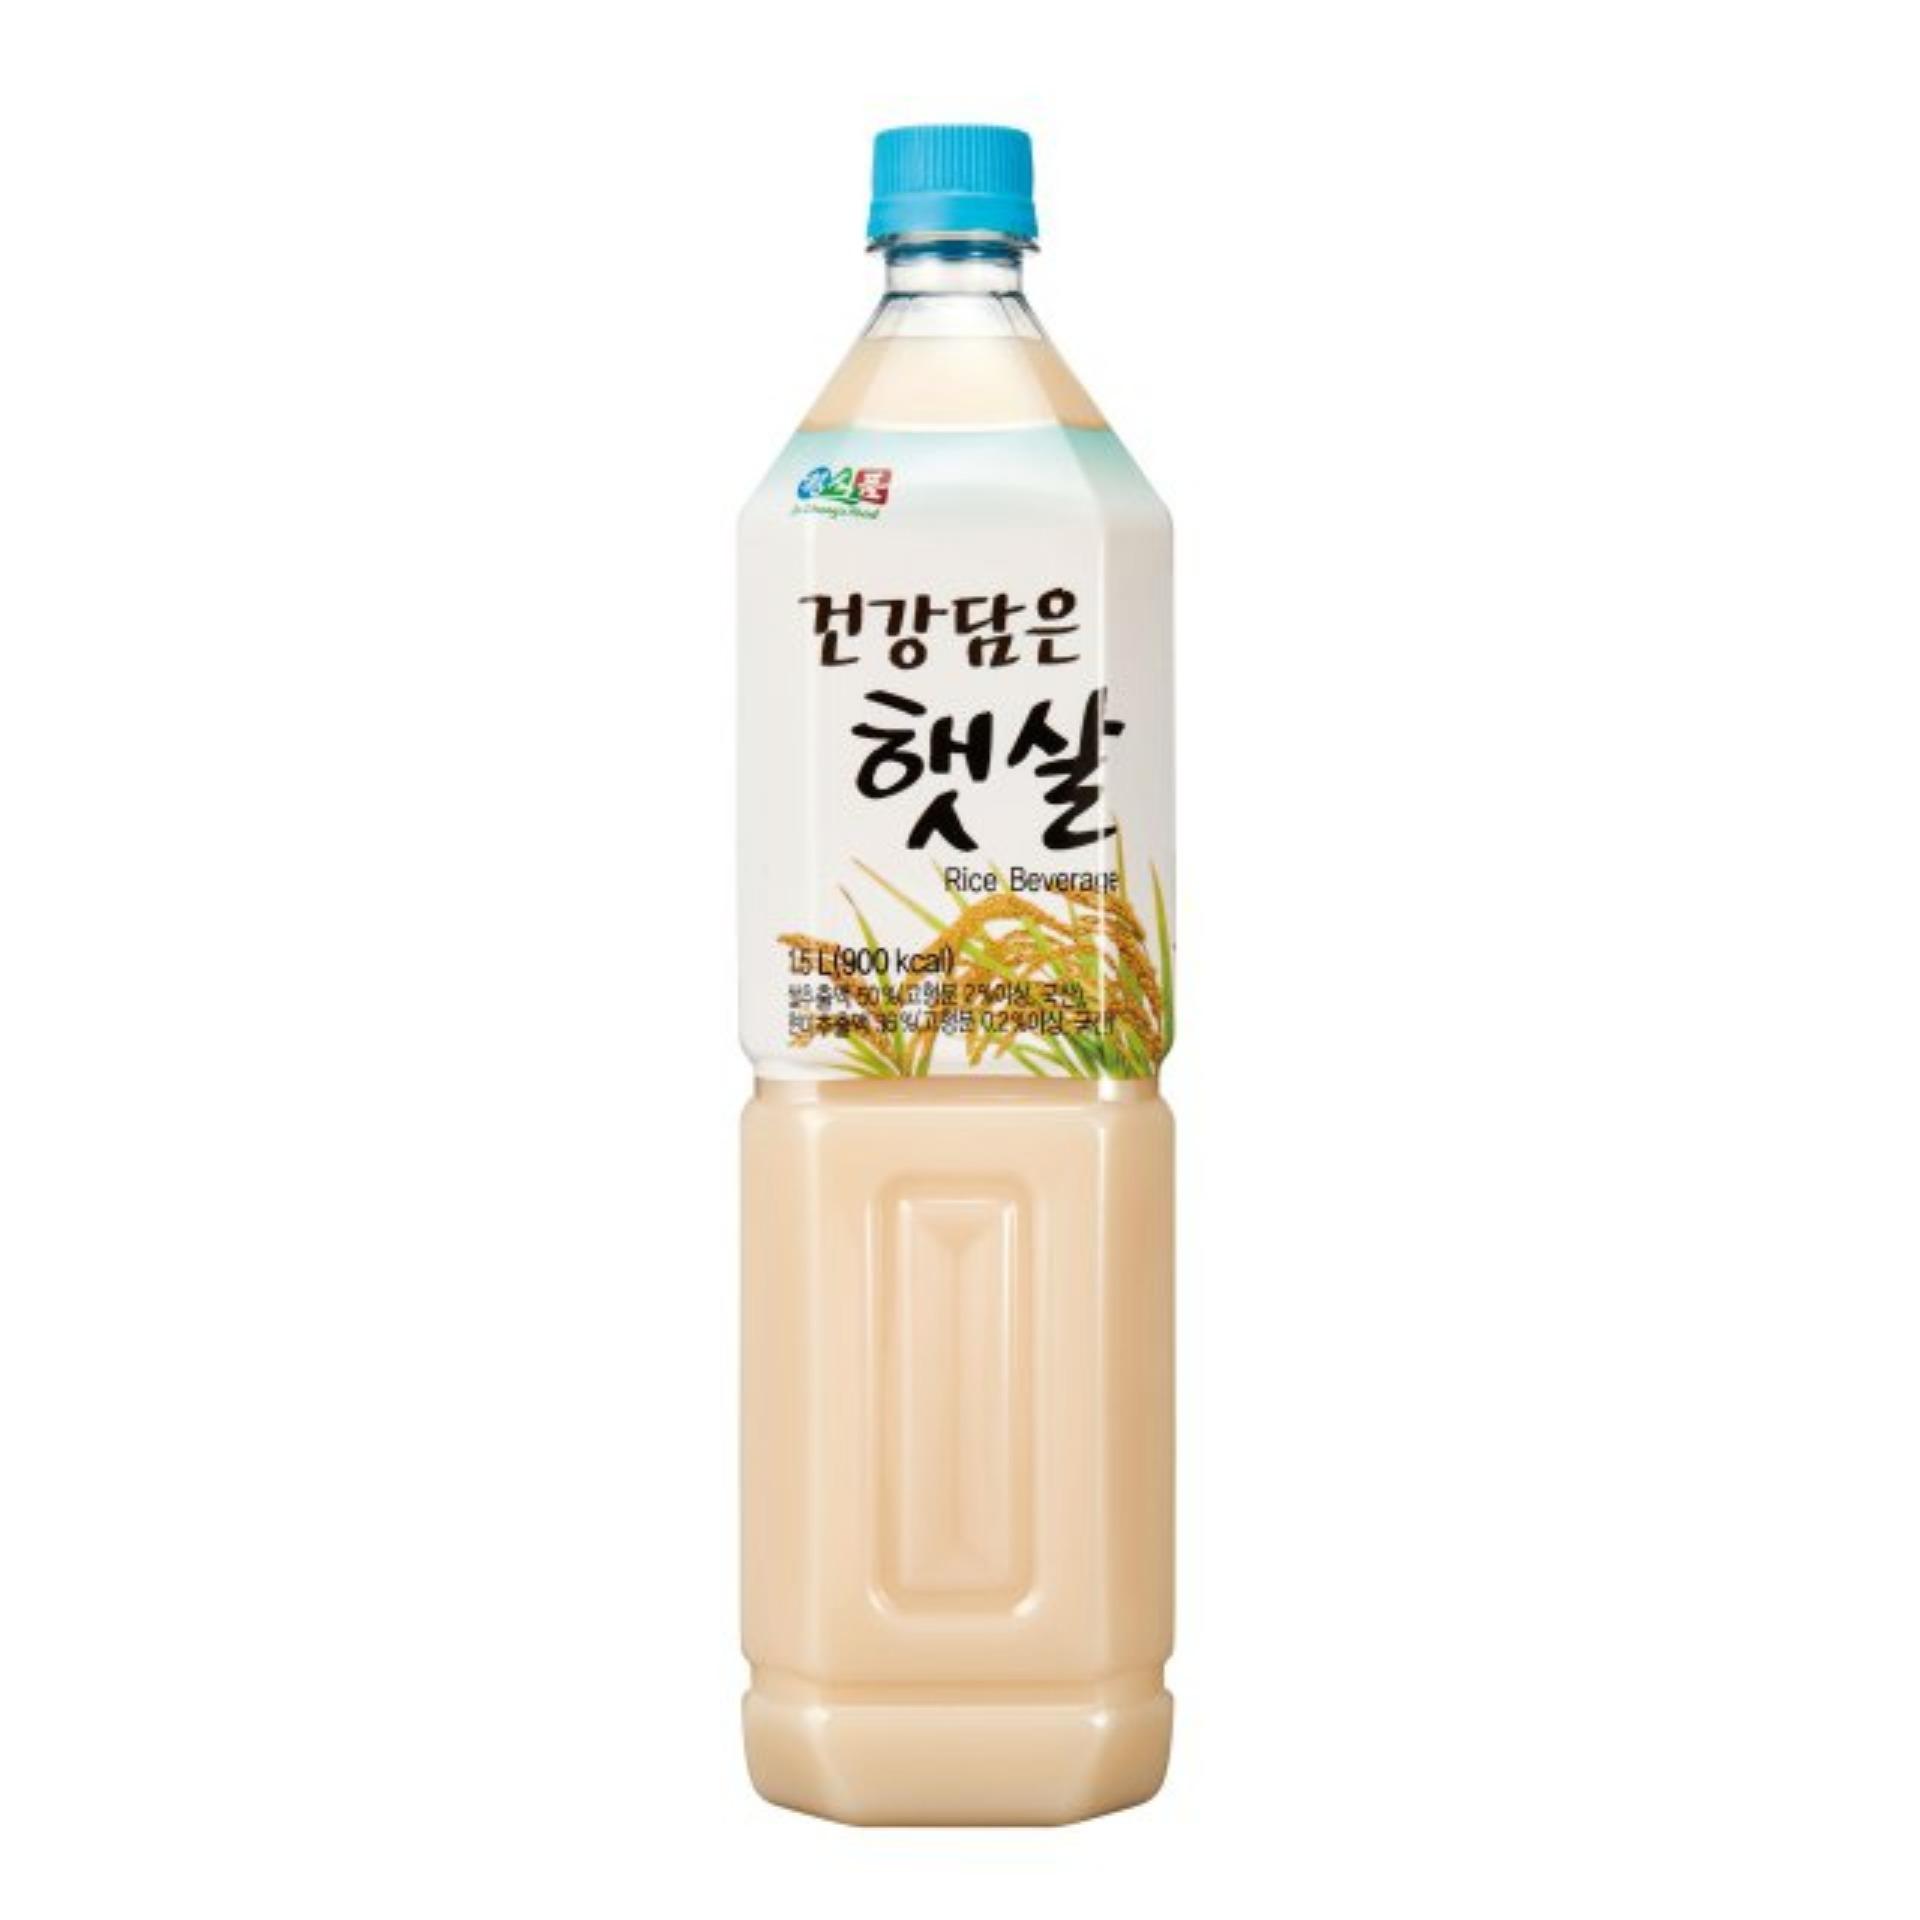 Nước Gạo Rang Vegemil Hàn Quốc 1,5L